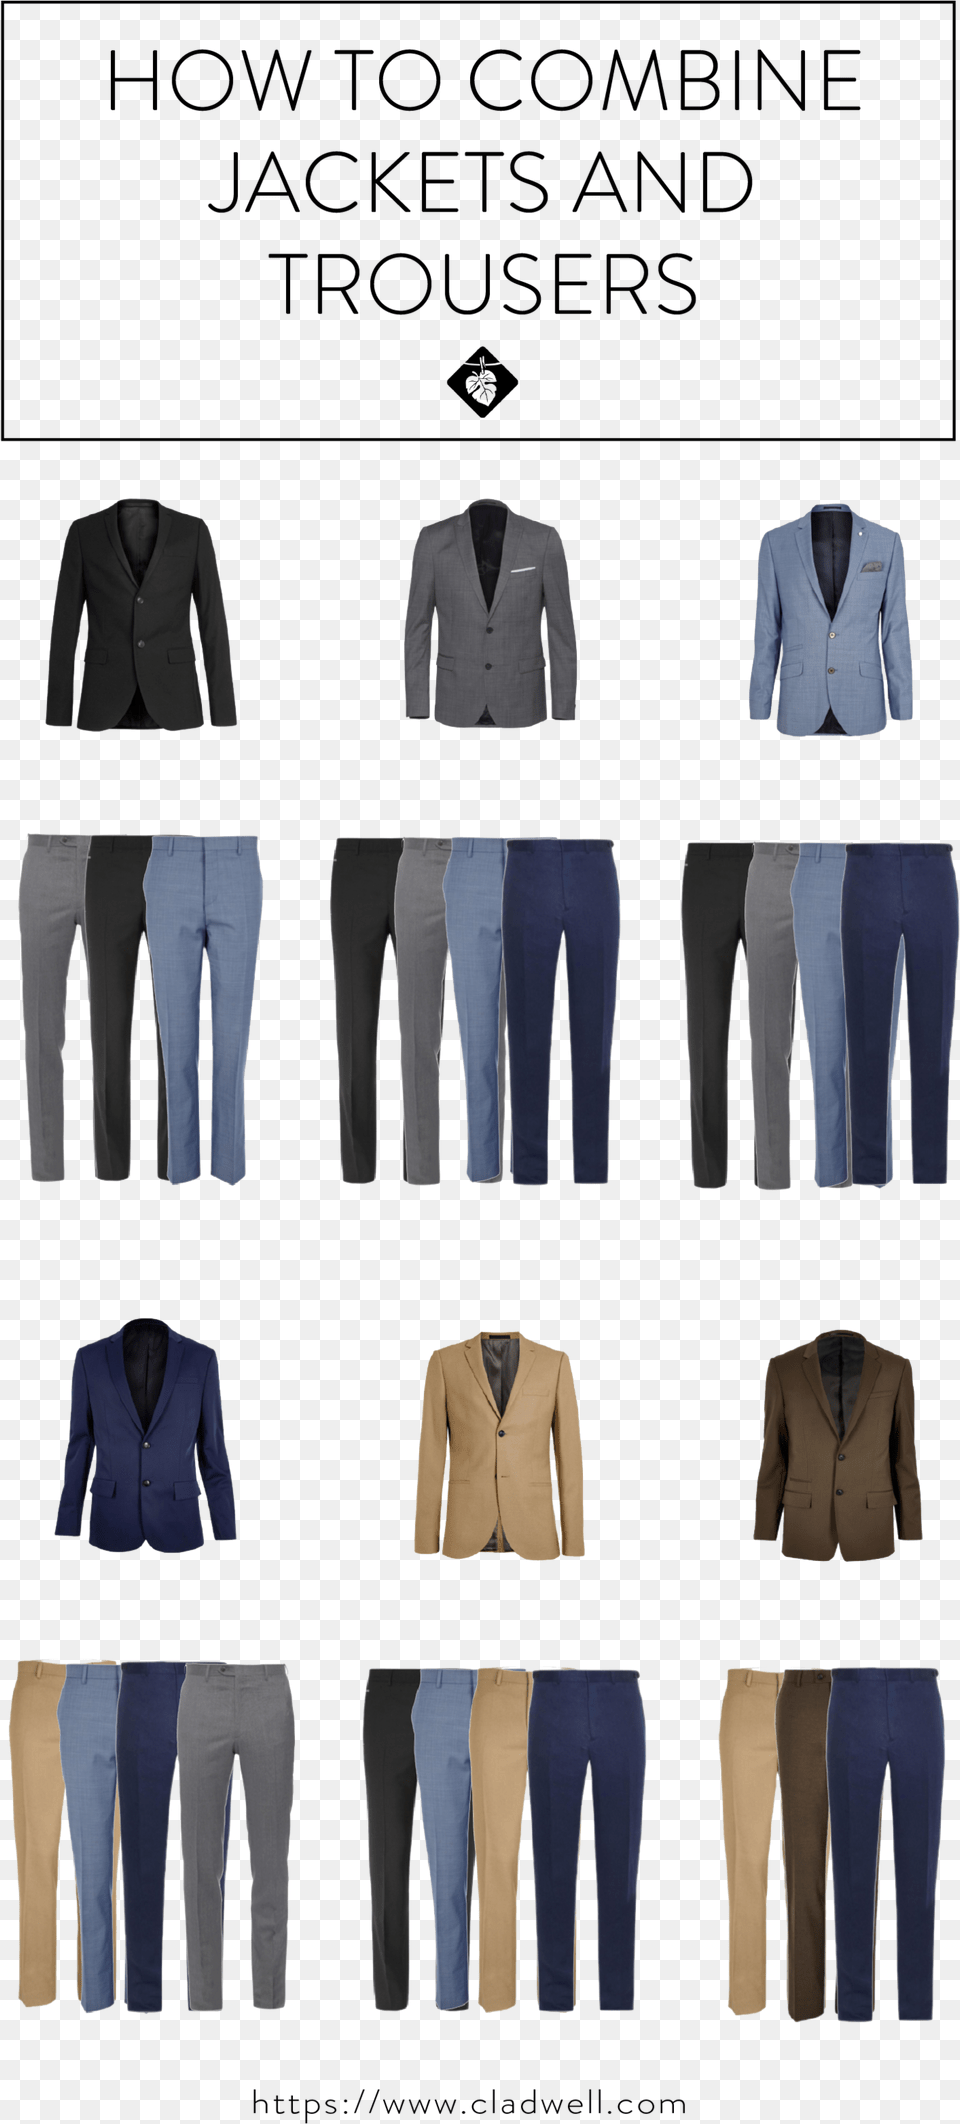 Como Combinar Saco Y Pantalon Ms Blue Blazer Outfit Combinar Saco Y Pantalon, Sleeve, Pants, Long Sleeve, Jacket Png Image